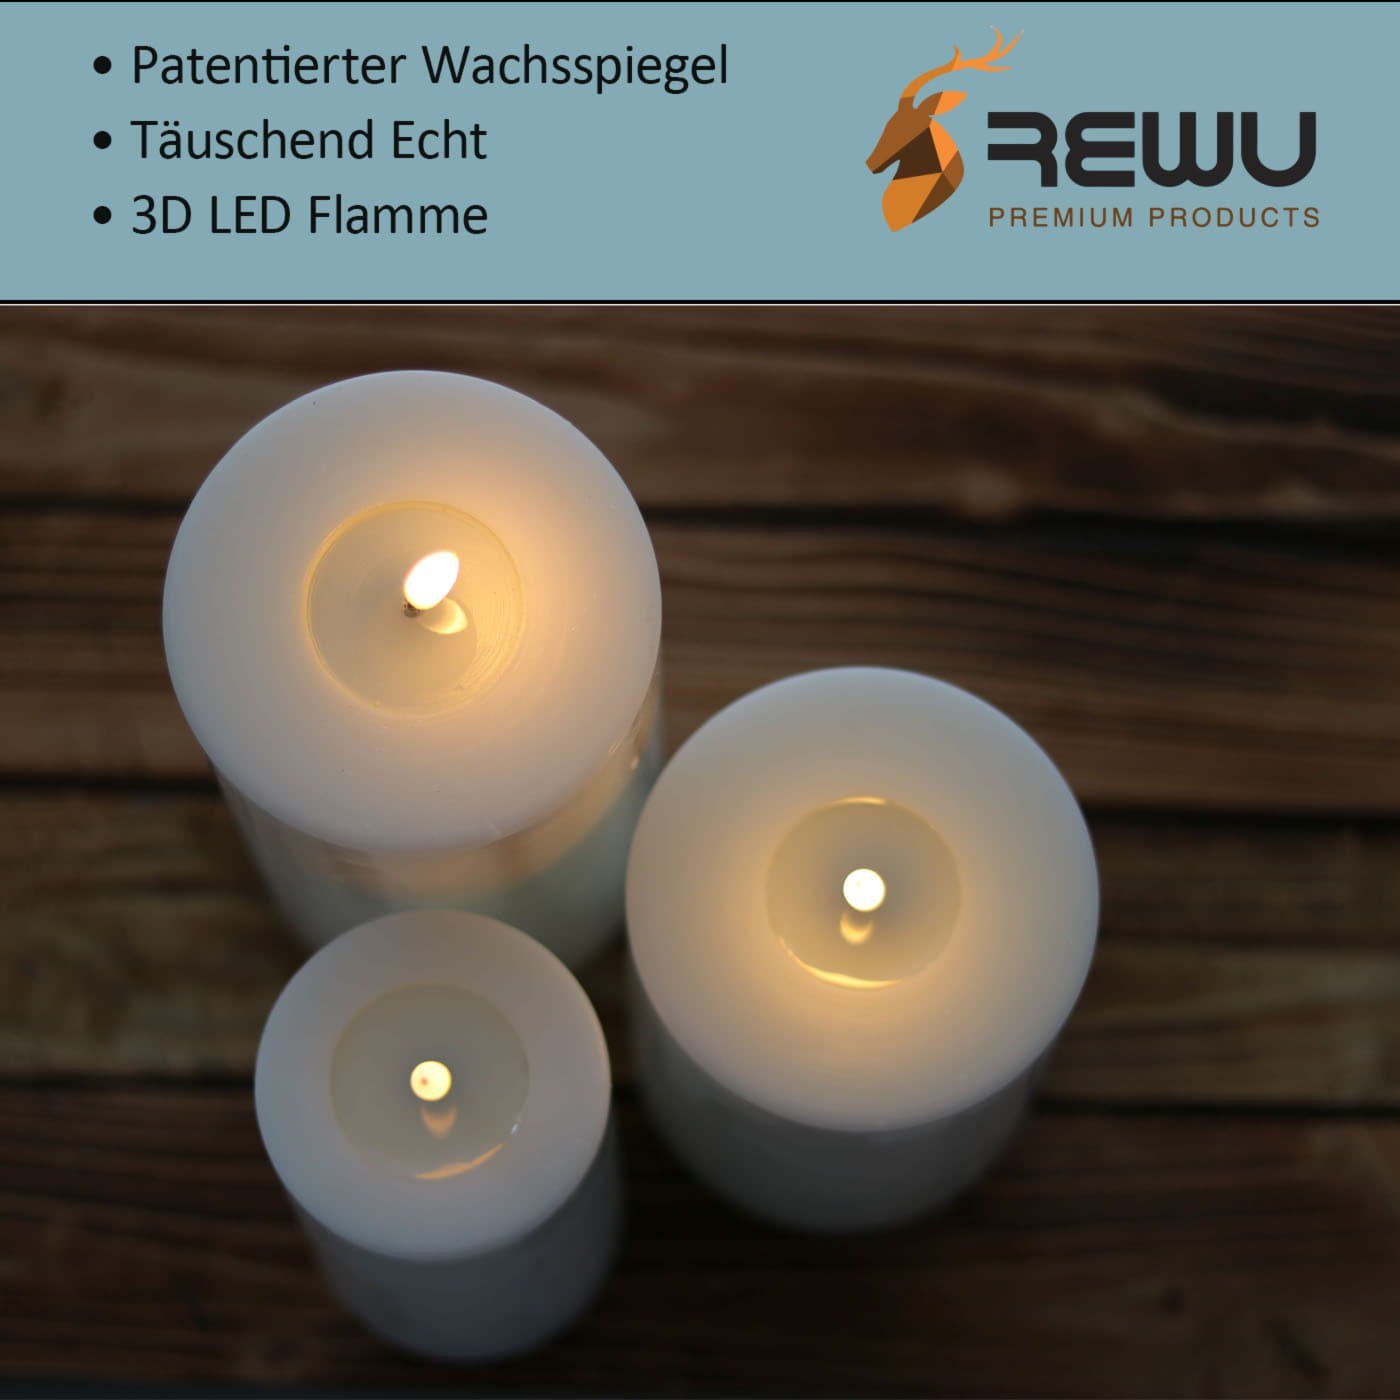 Warmweißes wirkende Mit LED-Kerze (Einteilig), Timerfunktion Licht Deluxe Echt flackernd, Homeart Wachsspiegel beige Flamme, 3D und